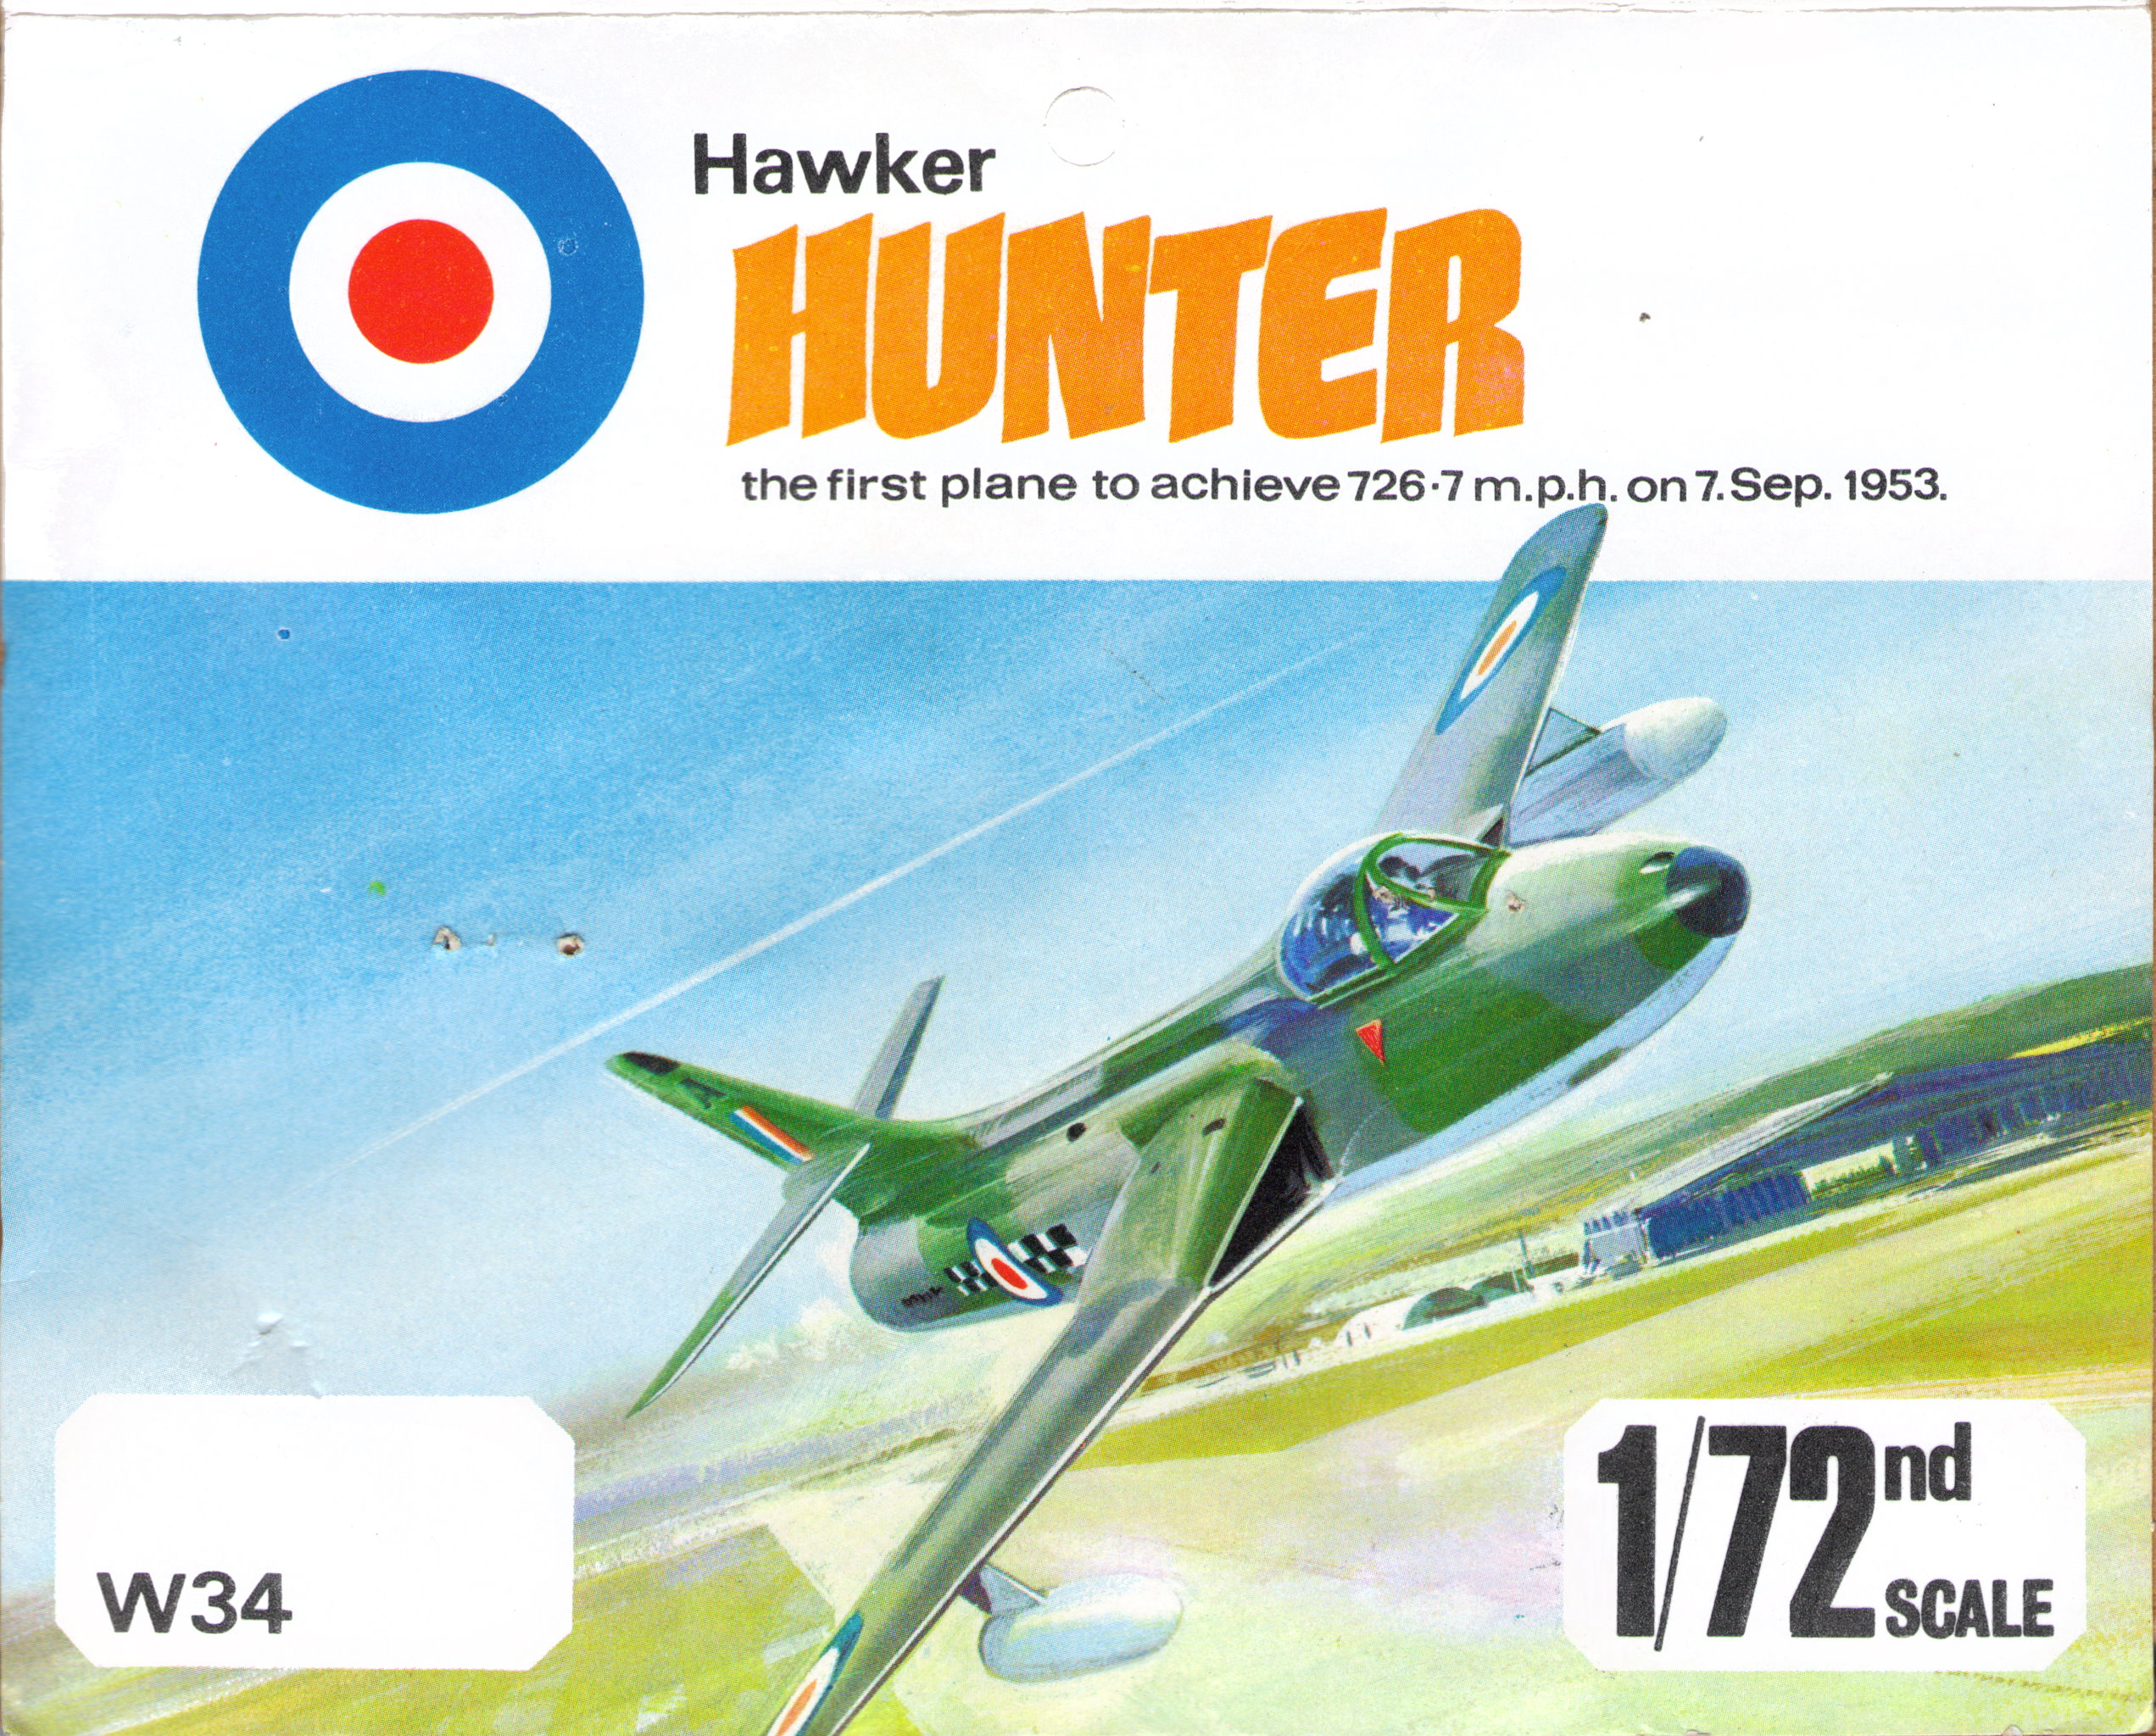 Rovex W34 Hawker Hunter F1 header card, 1968